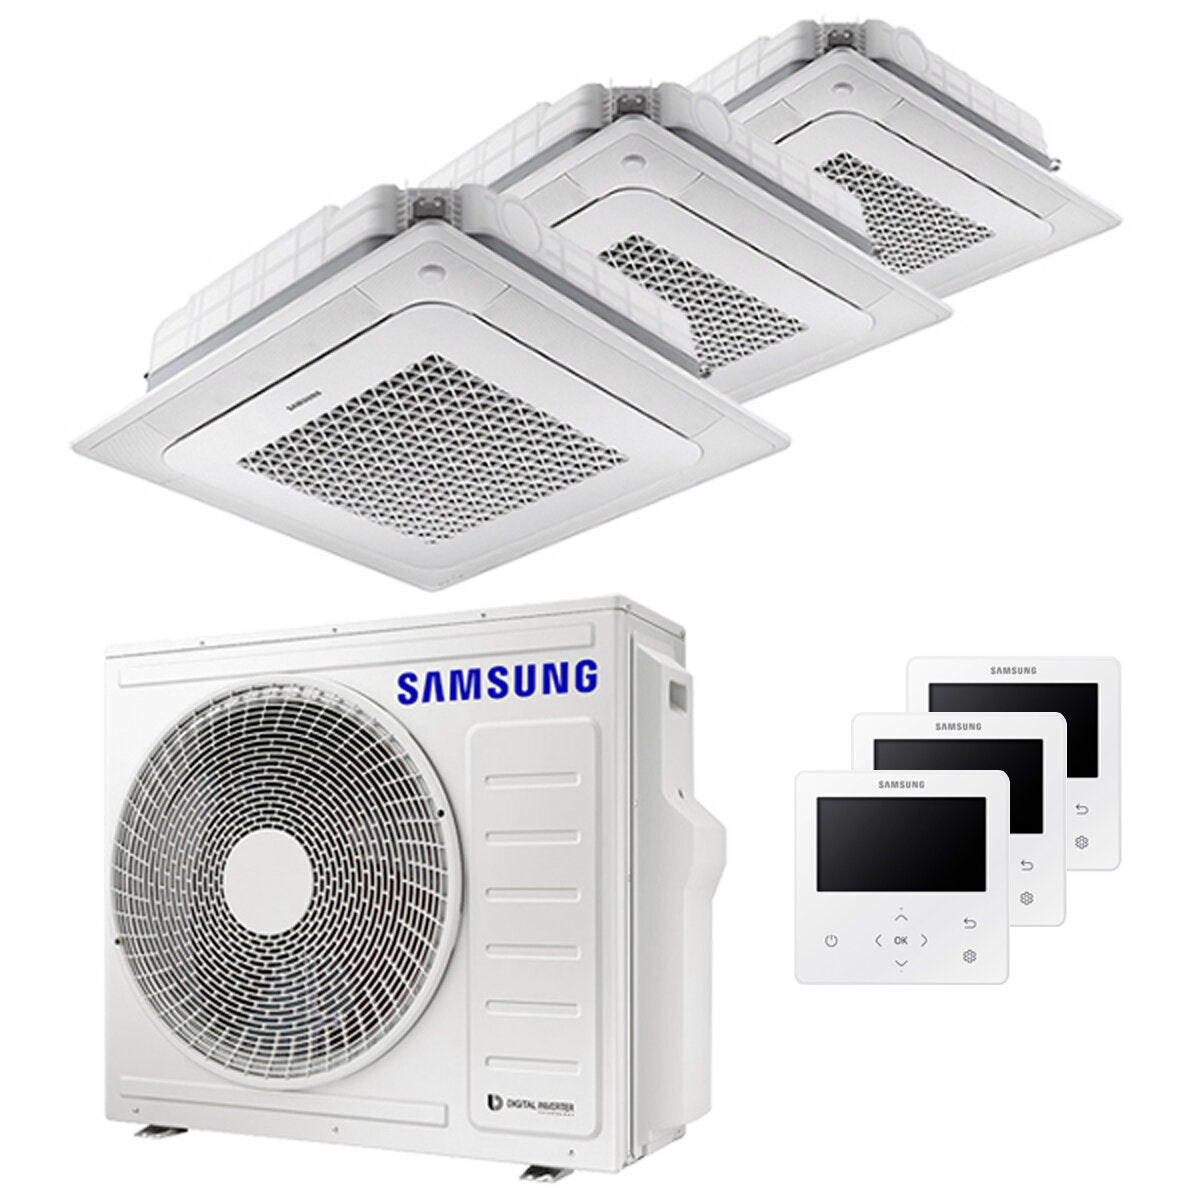 Samsung Klimaanlage Windfree 4-Wege Trial Split 12000 + 12000 + 12000 BTU Inverter A++ Außengerät 8,0 kW